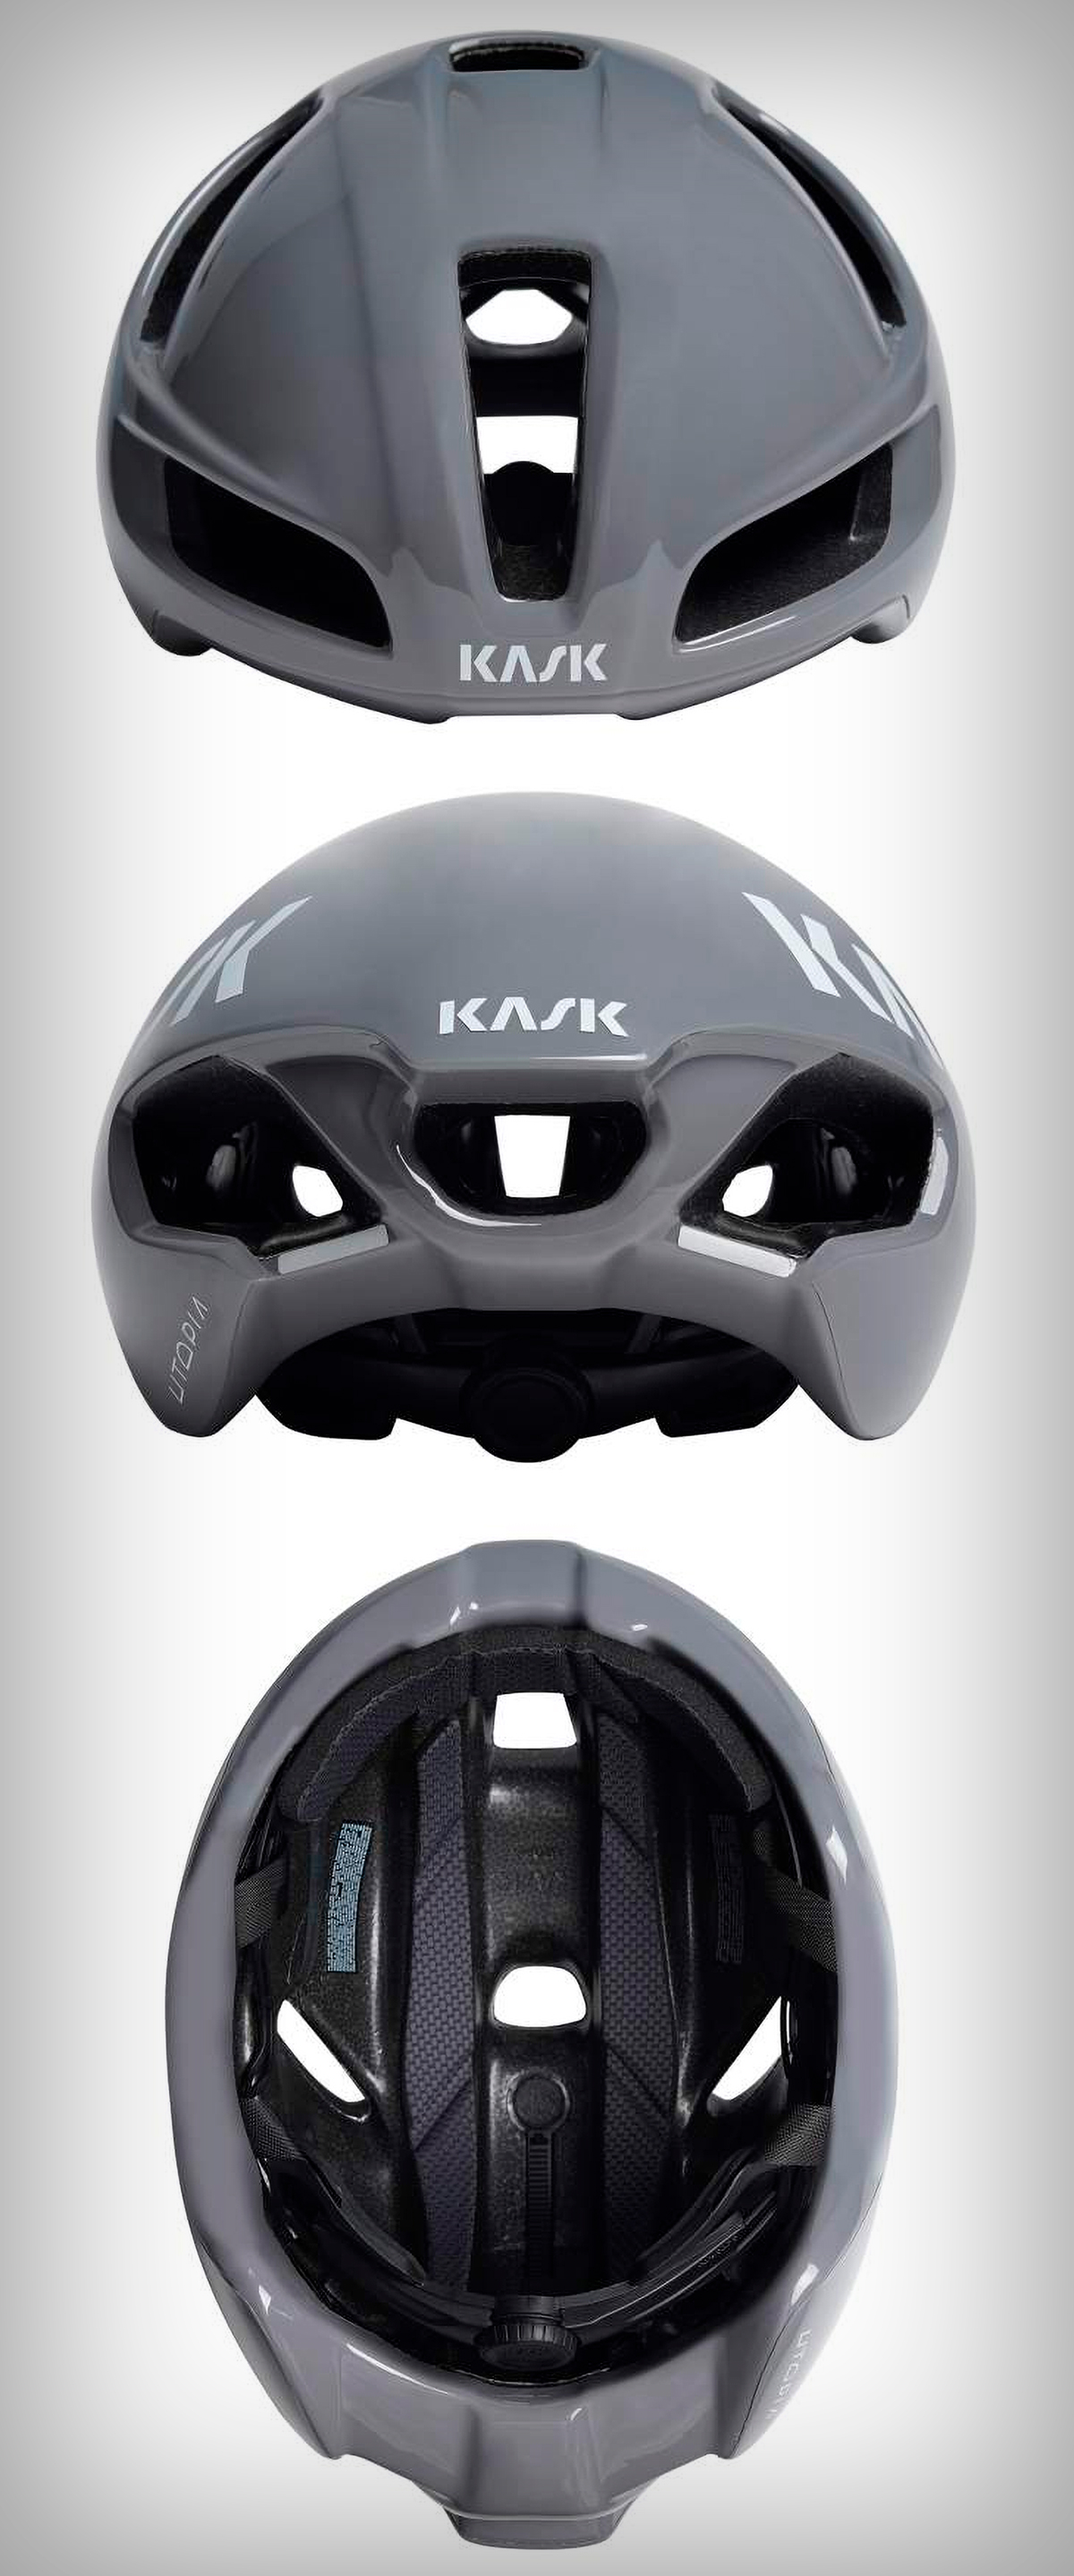 Kask Utopia Y, llega la versión actualizada del casco que utilizan los corredores del Ineos Grenadiers